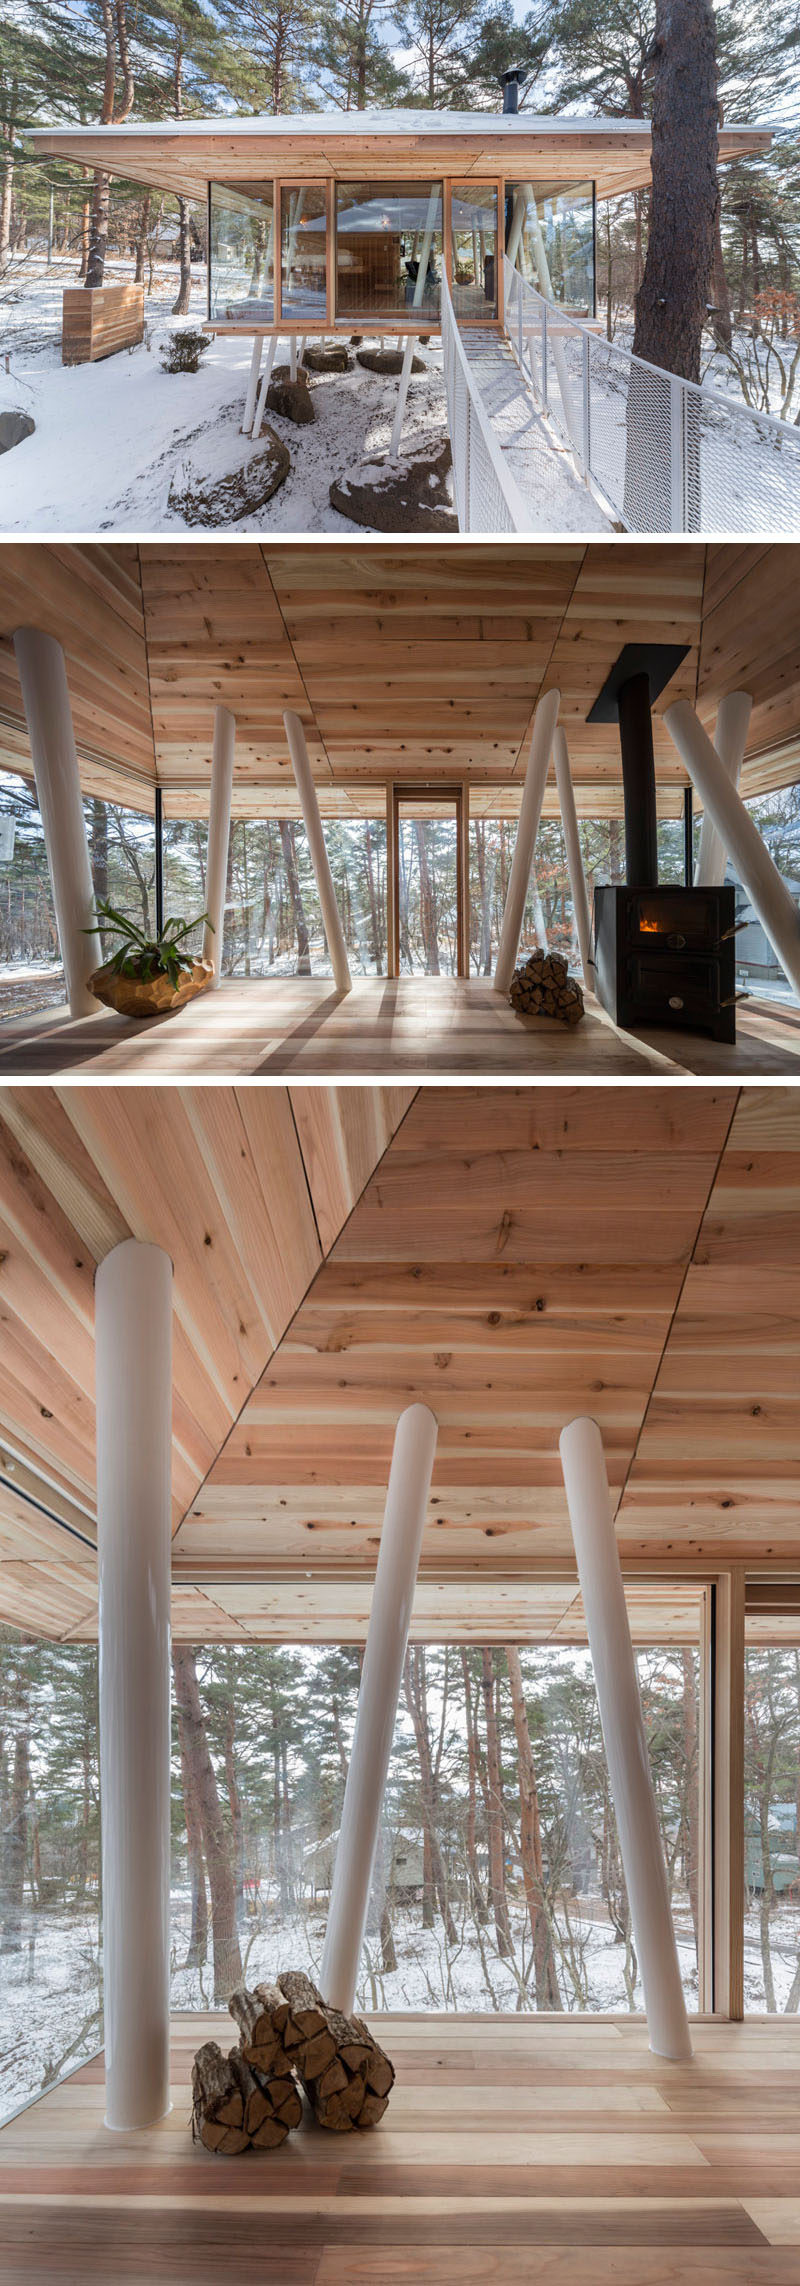 Архитектурная фирма Life Style Koubou разработала« Годовой проект »- дом для отдыха в Японии, состоящий из двух отдельных зданий, расположенных на сваях и соединенных мостом. # Архитектура # Современная архитектура # Ходул # ОтпускДом # ЯпонскийАрхитектура # ИнтерьерДизайн # Дерево